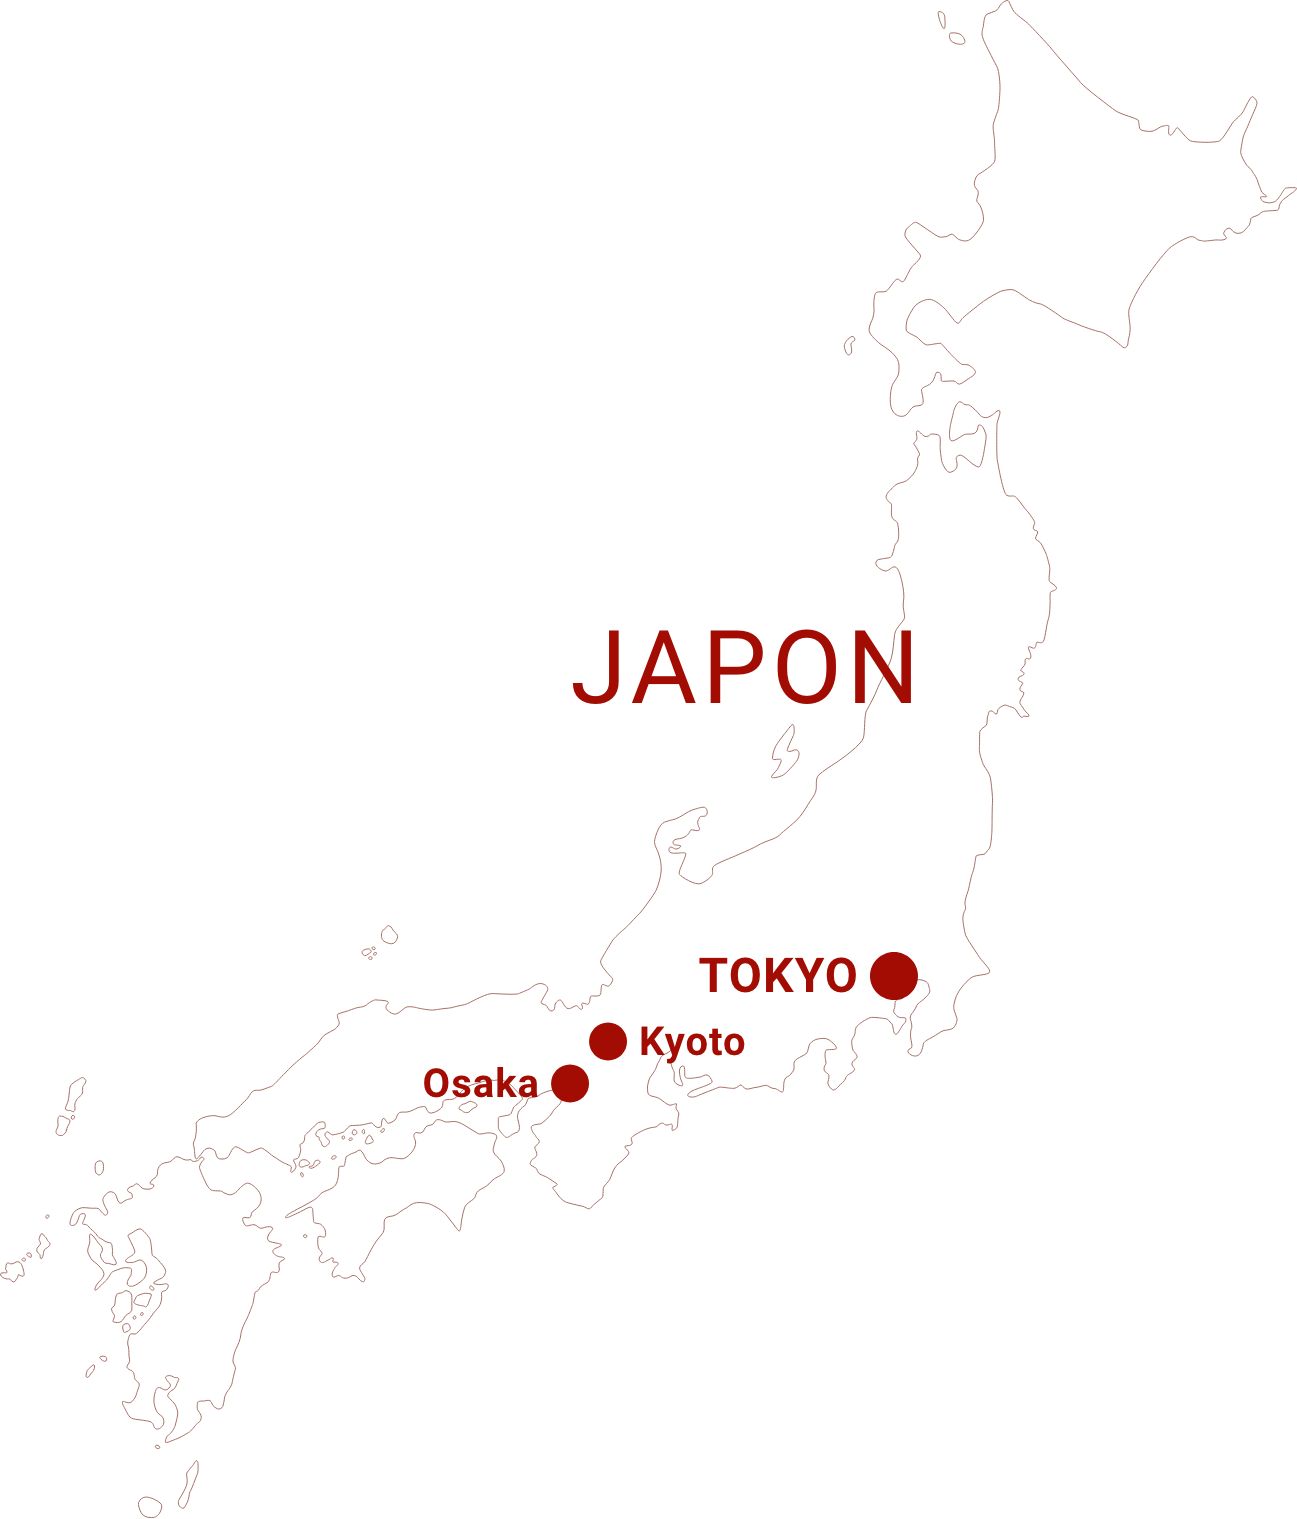 Carte du Japon avec un indicateur sur les villes Tokyo, Kyoto et Osaka 